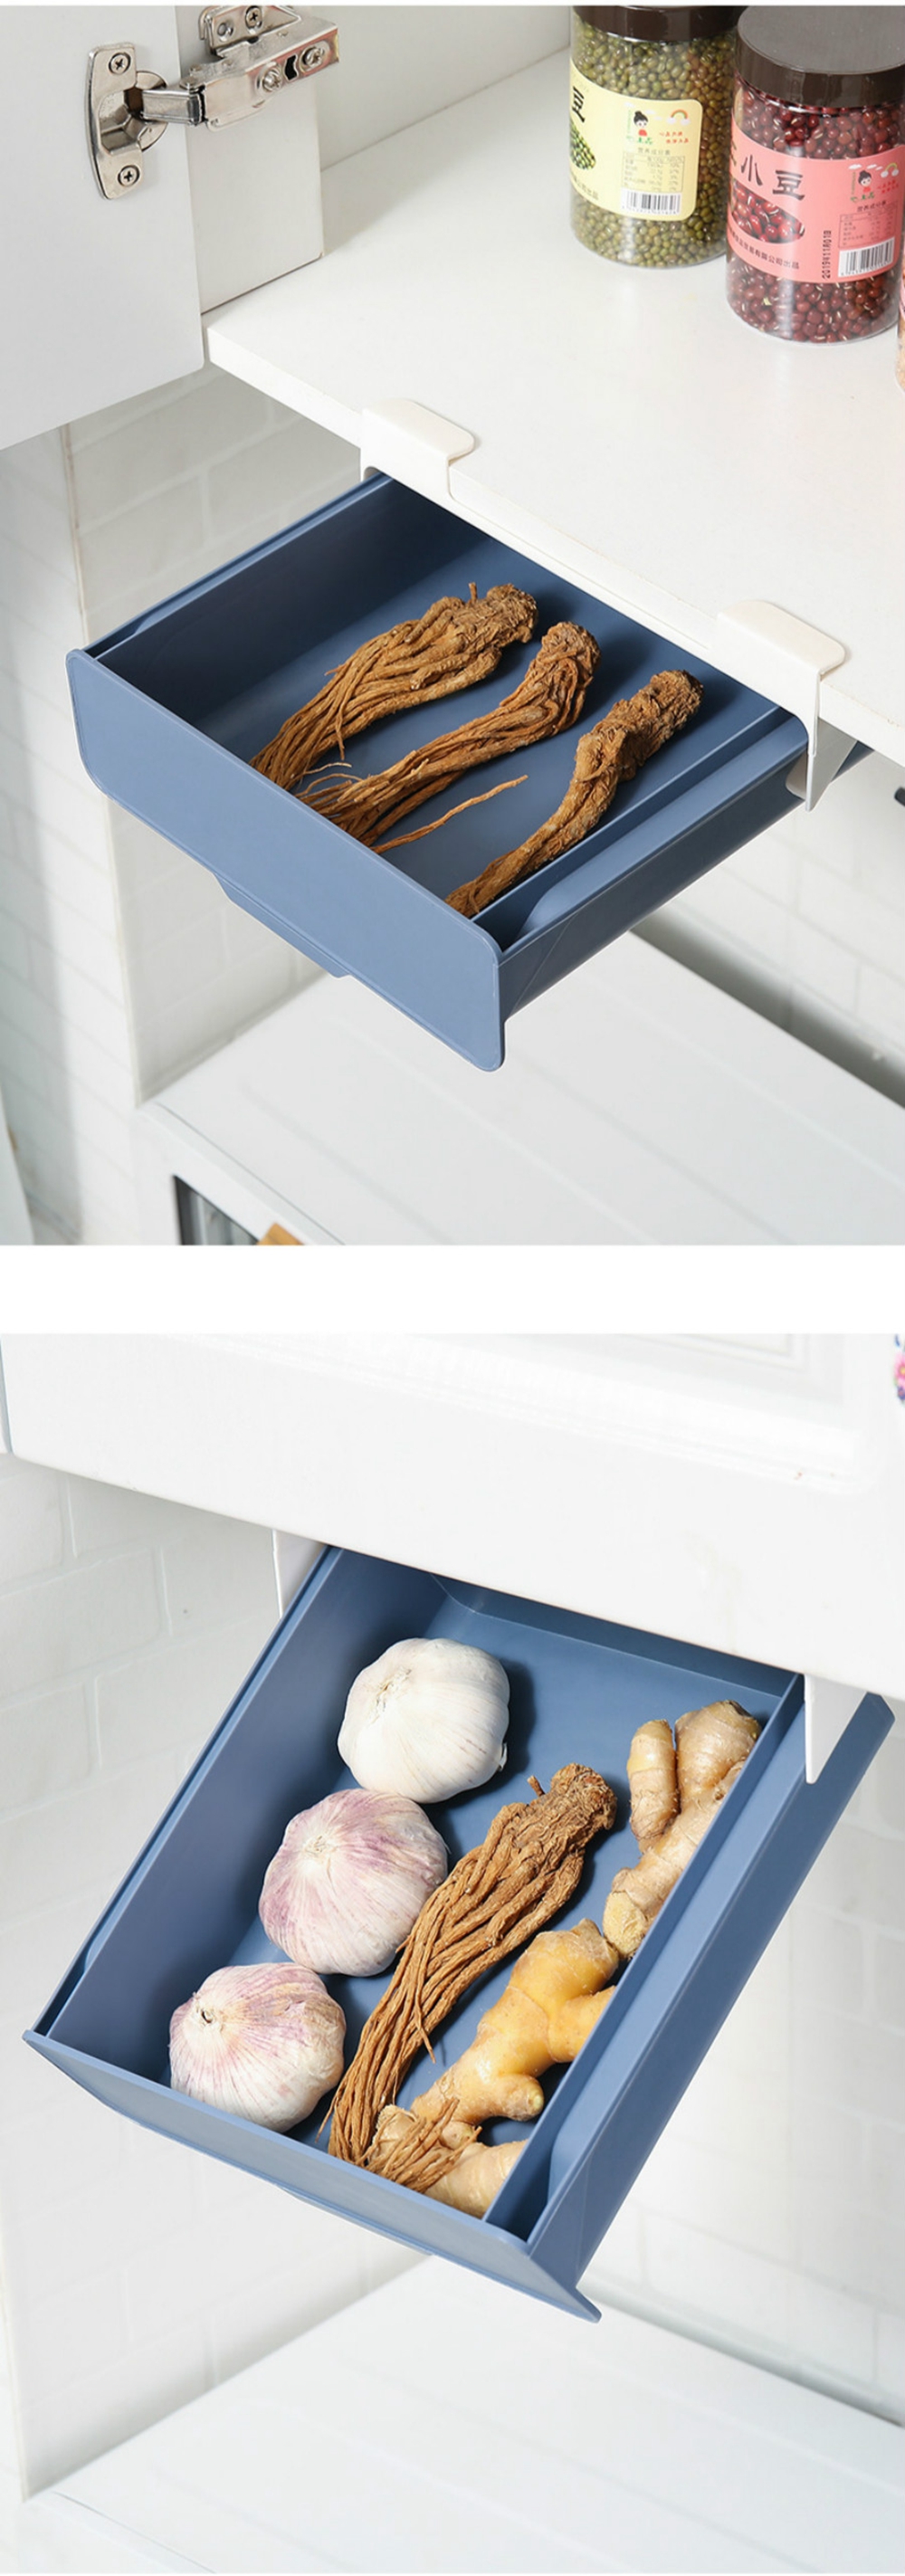 1Pcs-Hidden-Paste-Storage-Drawer-Kitchen-Organizer-Storage-Box-Stationery-Holder-Case-Container-Adhe-1697386-3